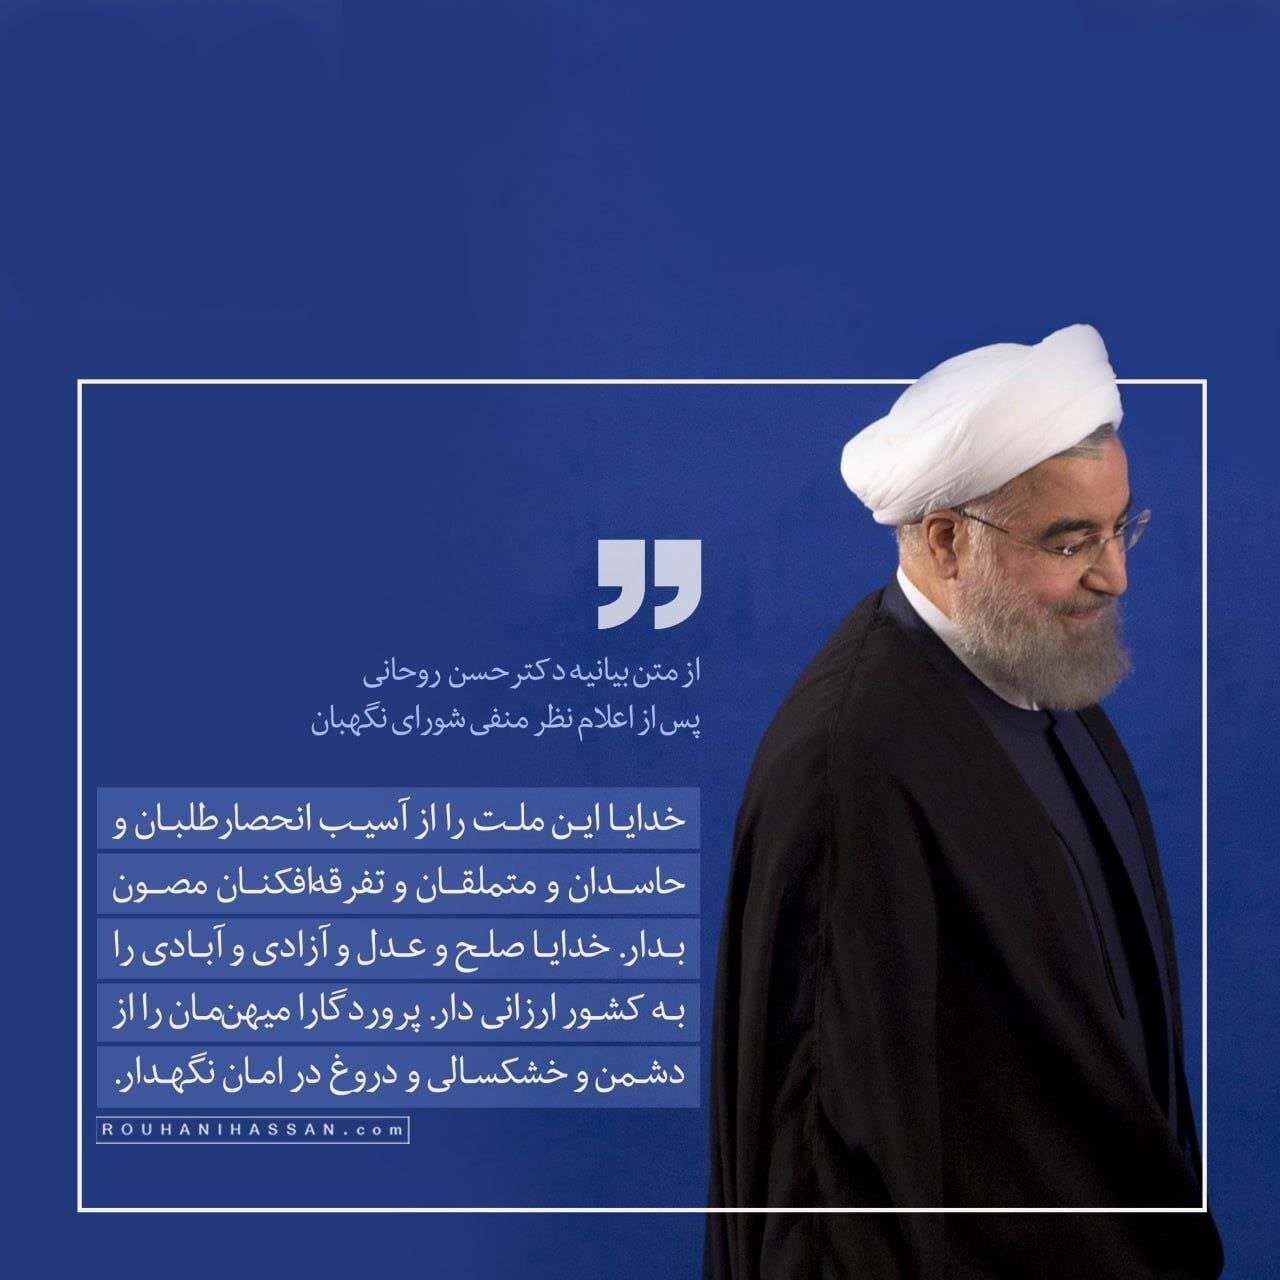 دعای ویژه حسن روحانی بعد از ردصلاحیتش